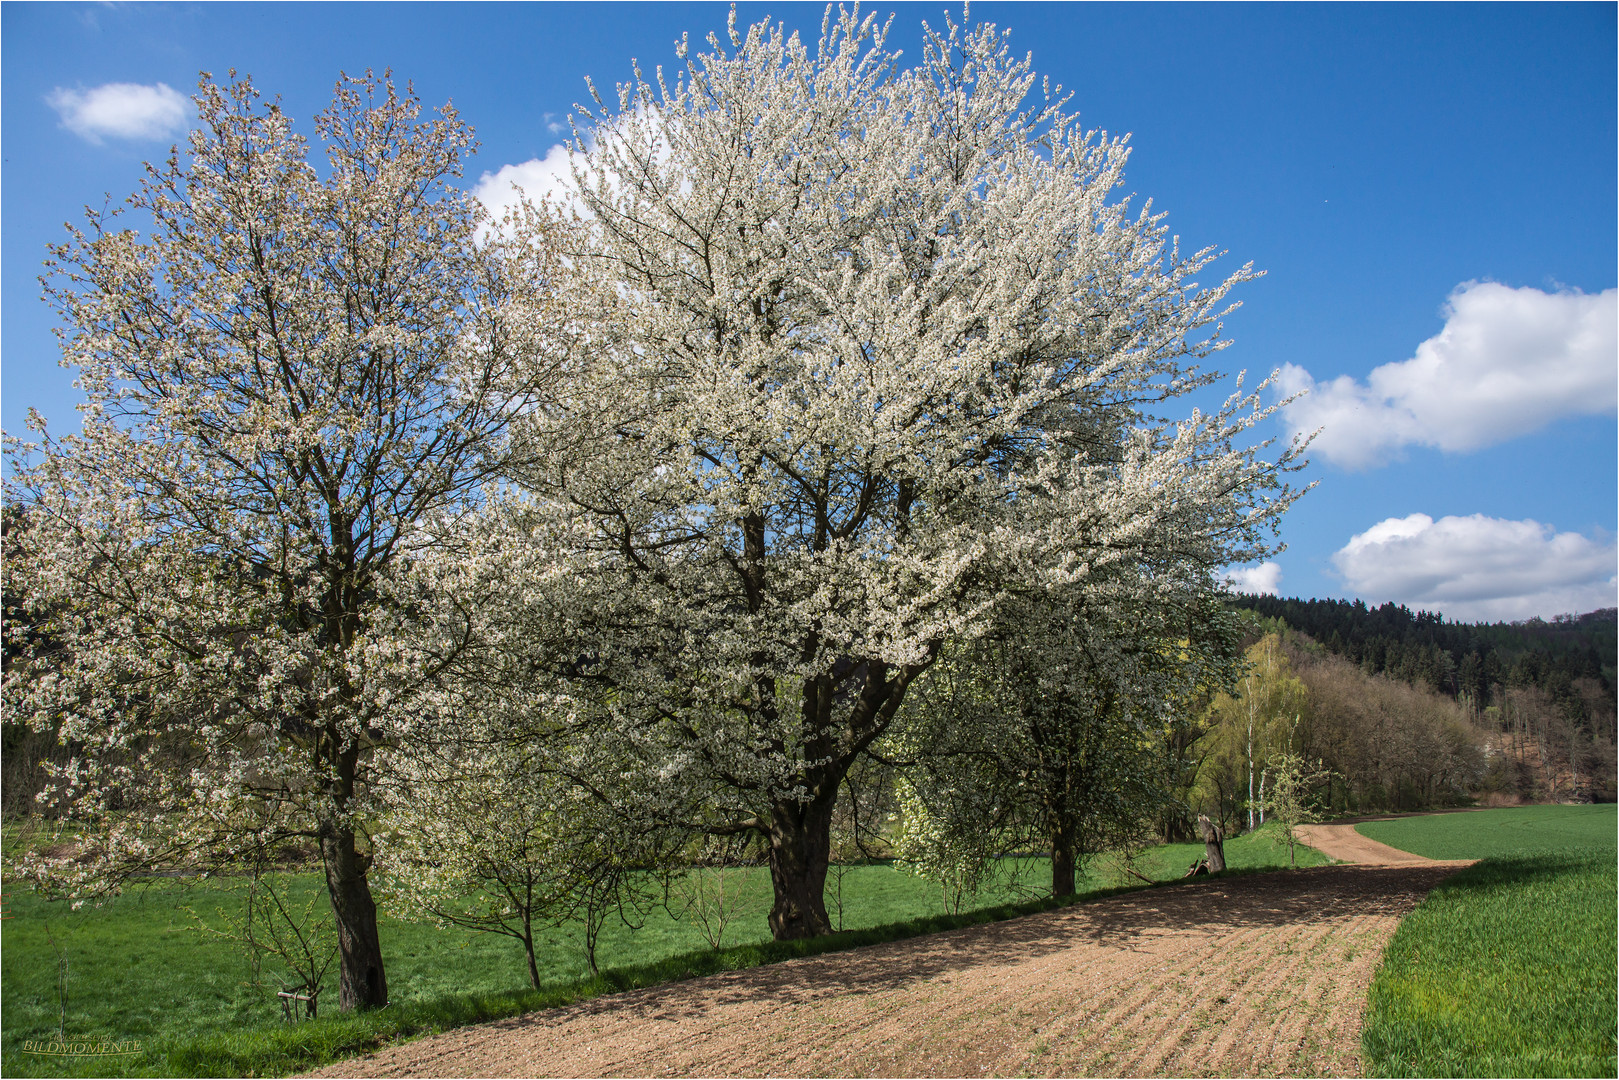 Kirschblüte im Muldental bei Wechselburg